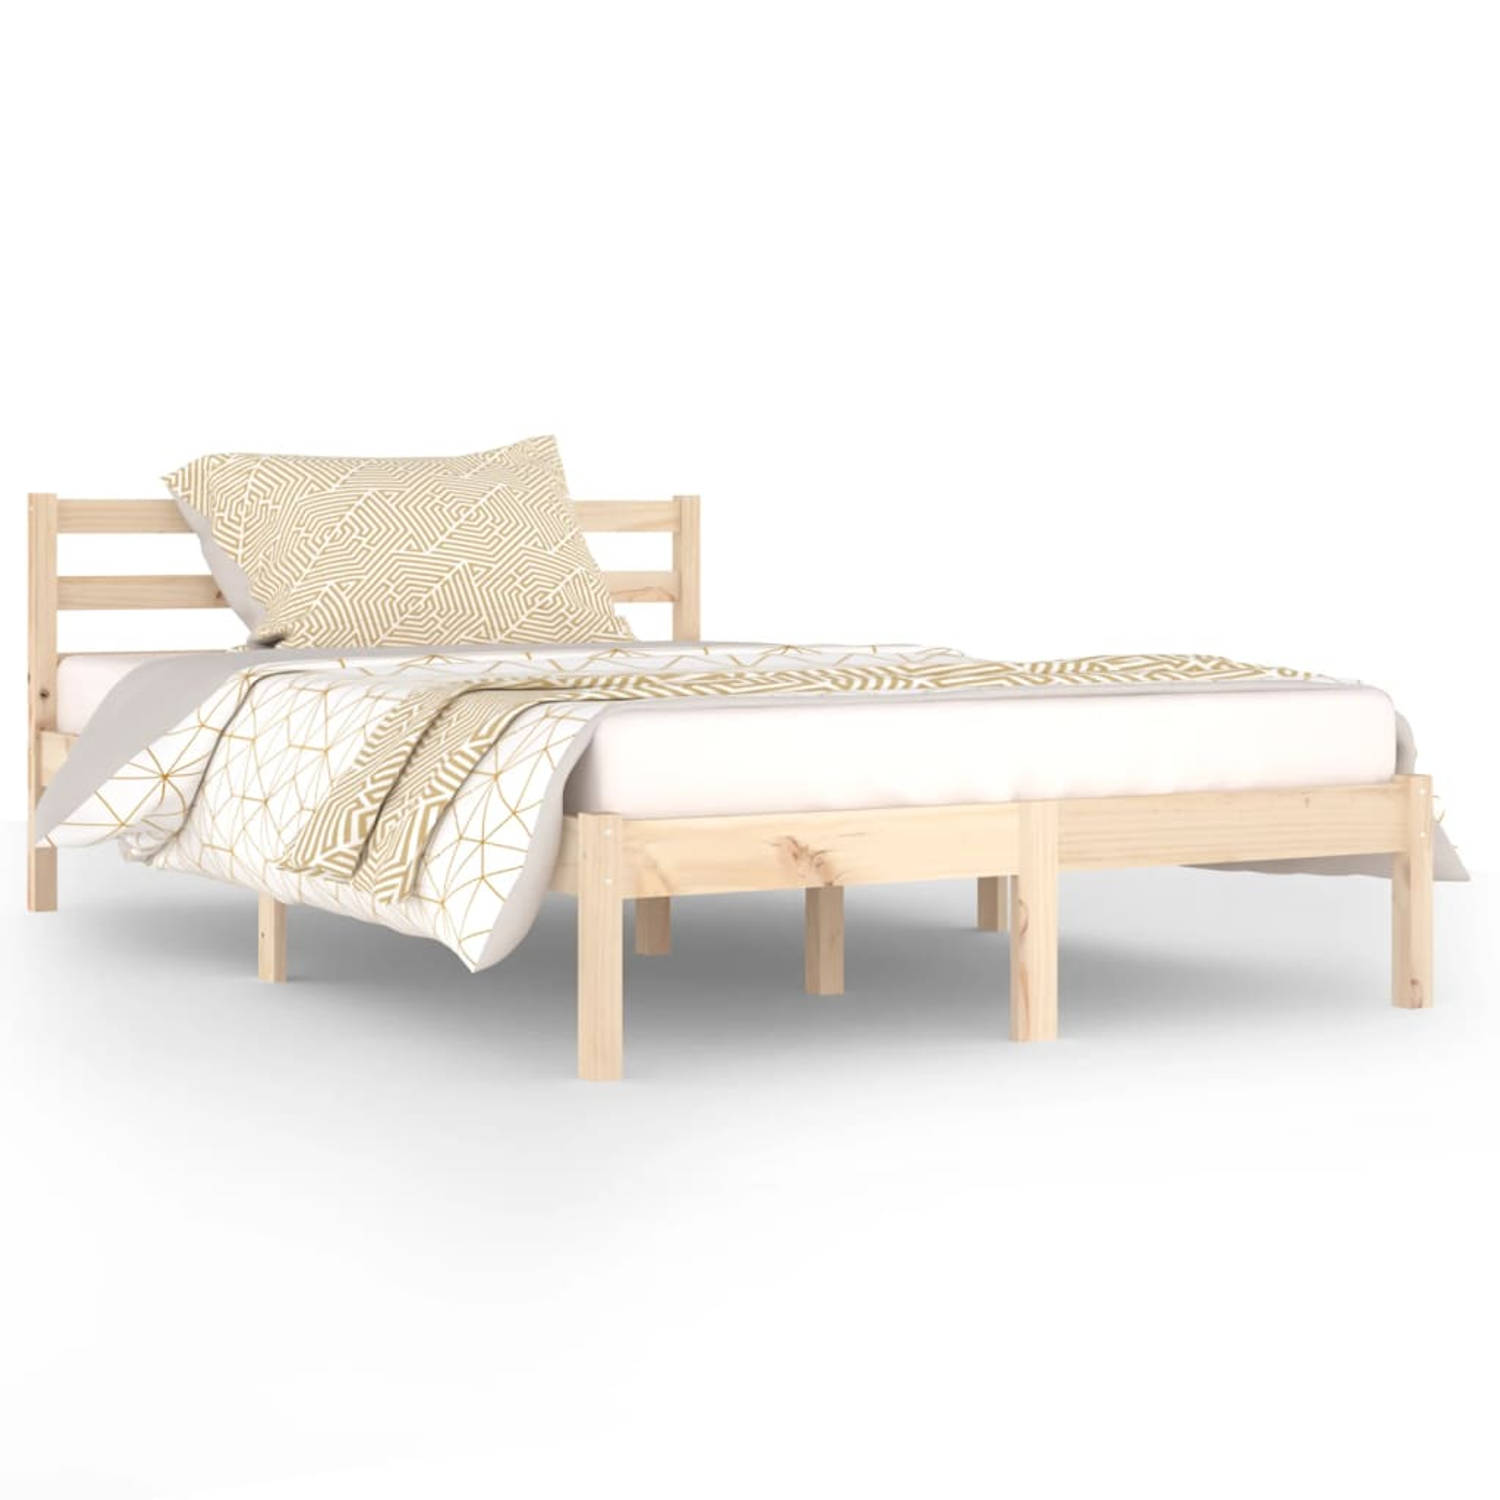 The Living Store Bedframe massief grenenhout 120x200 cm - Bedframe - Bedframes - Bed - Bedbodem - Ledikant - Bed Frame - Massief Houten Bedframe - Slaapmeubel - Bedden - Bedbodems